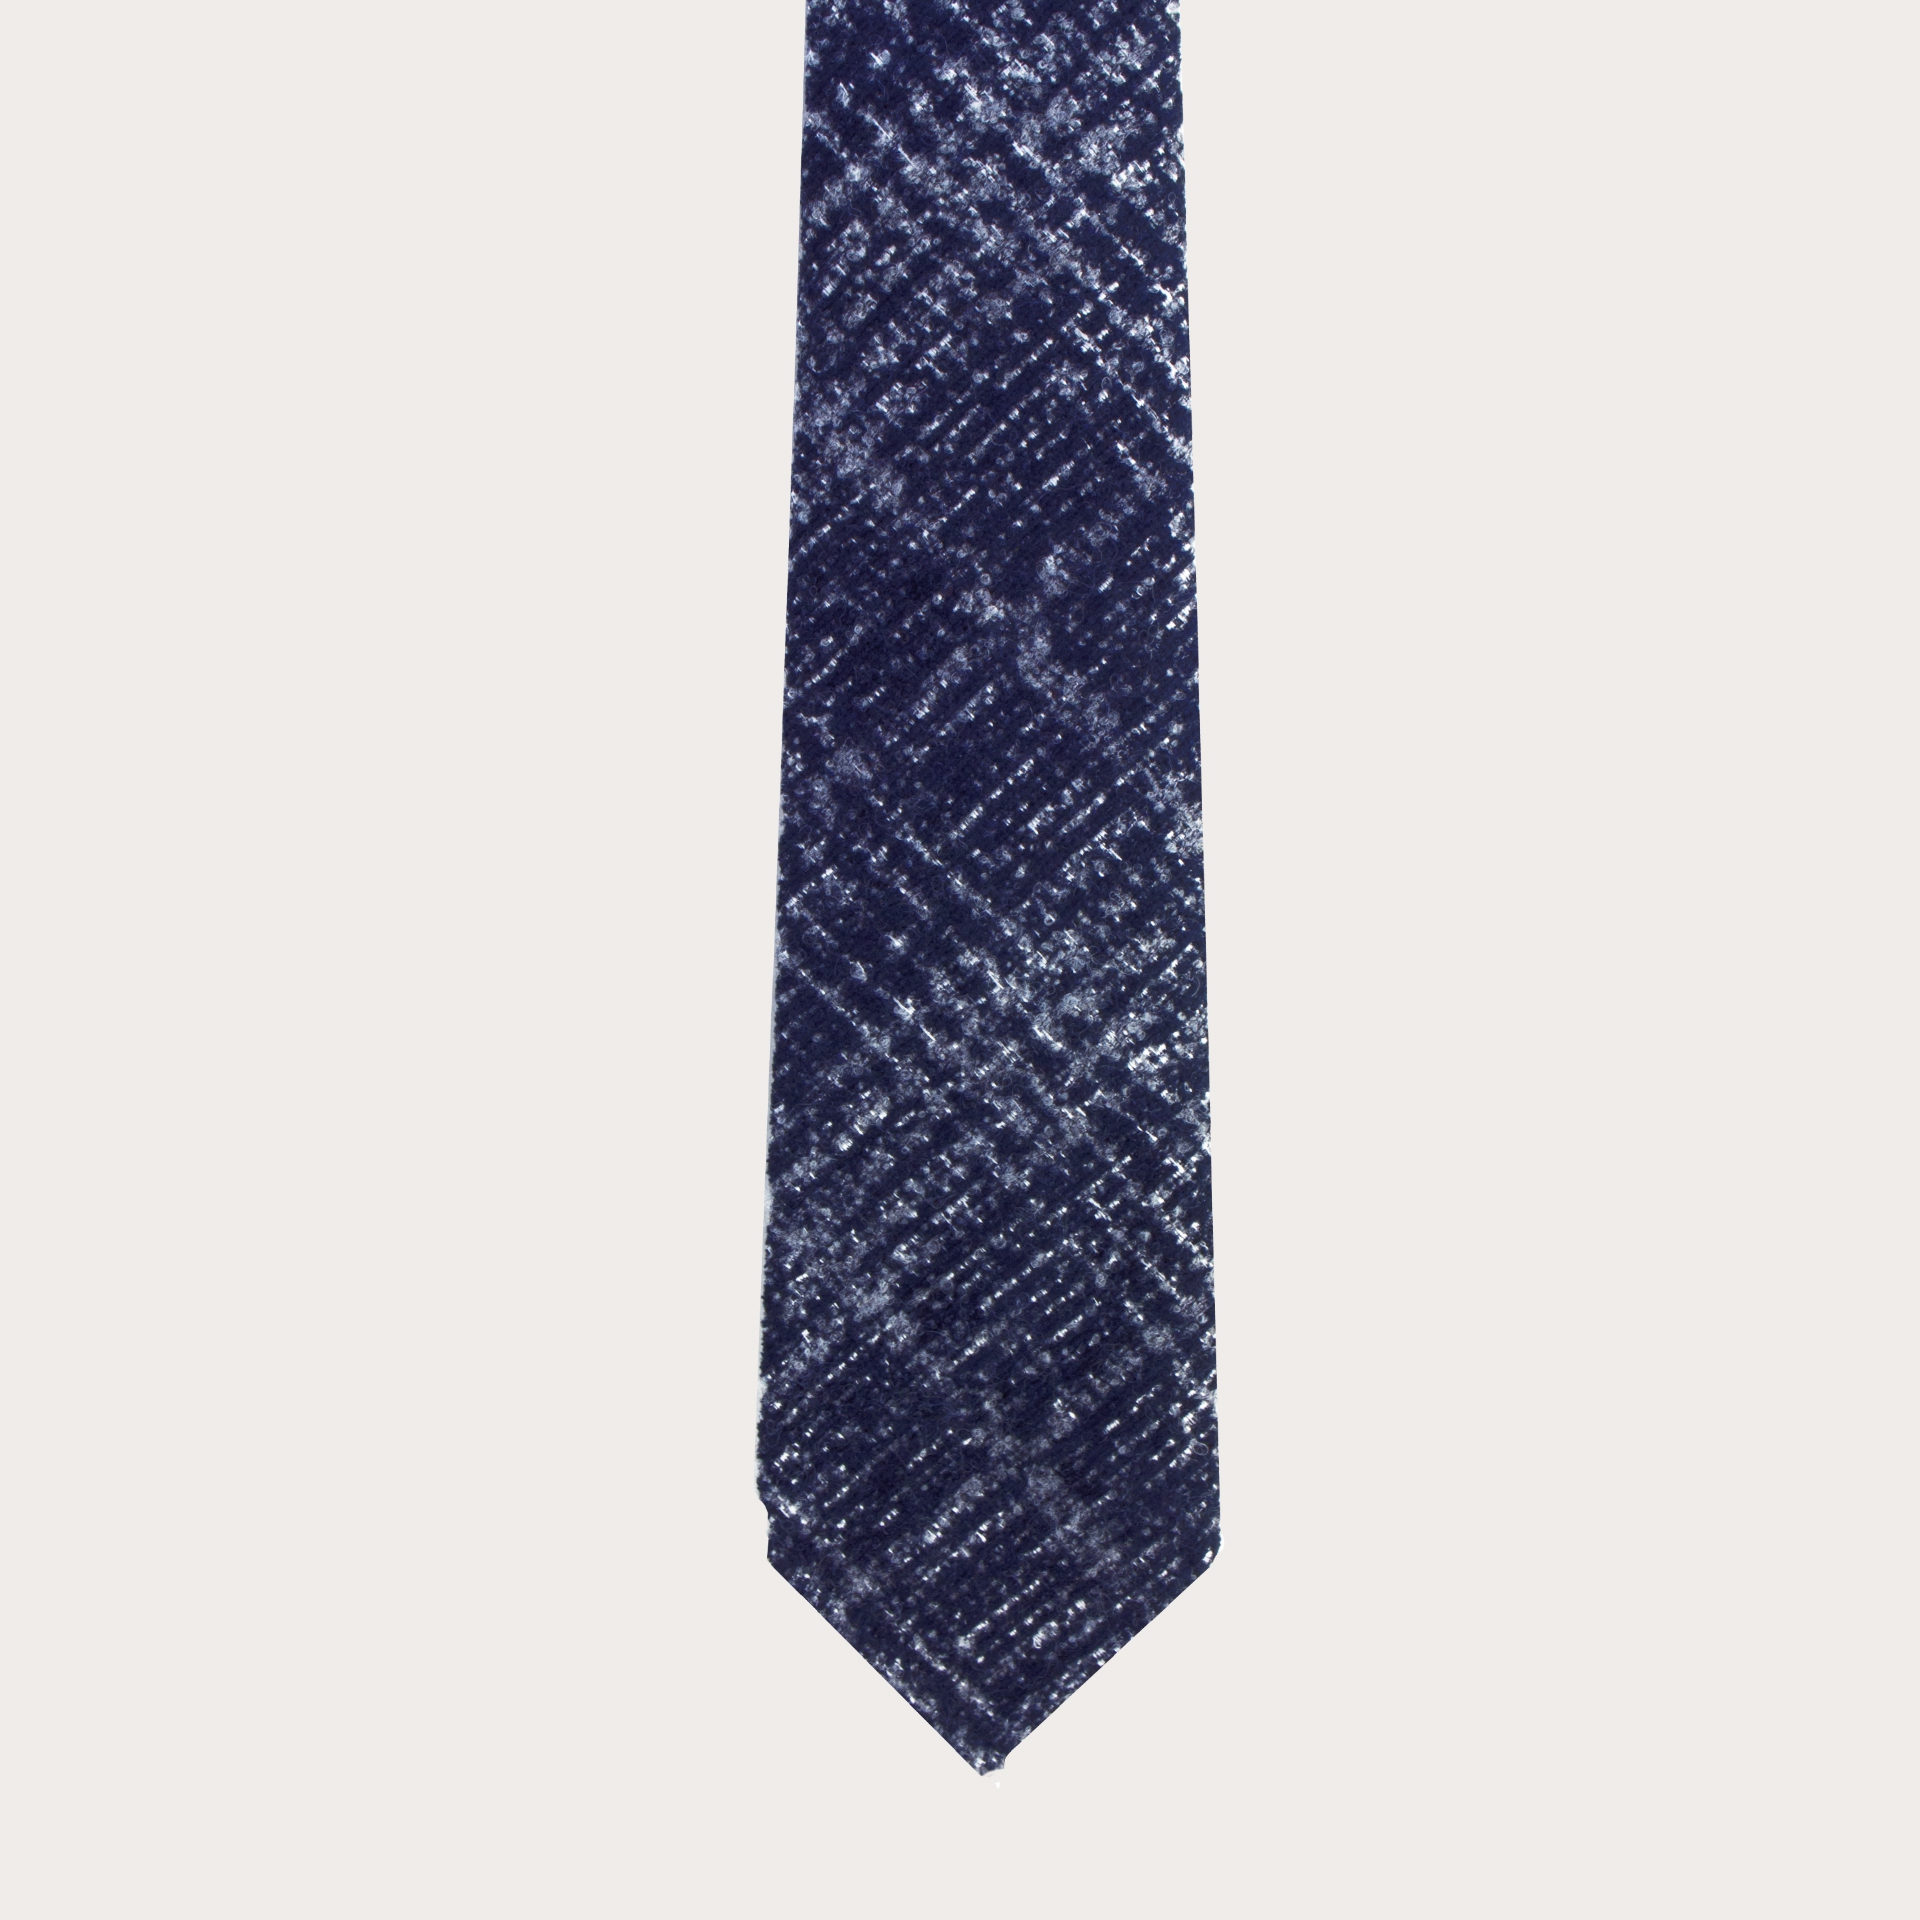 Cravate non doublée en laine et soie, tartan bleu et bleu clair